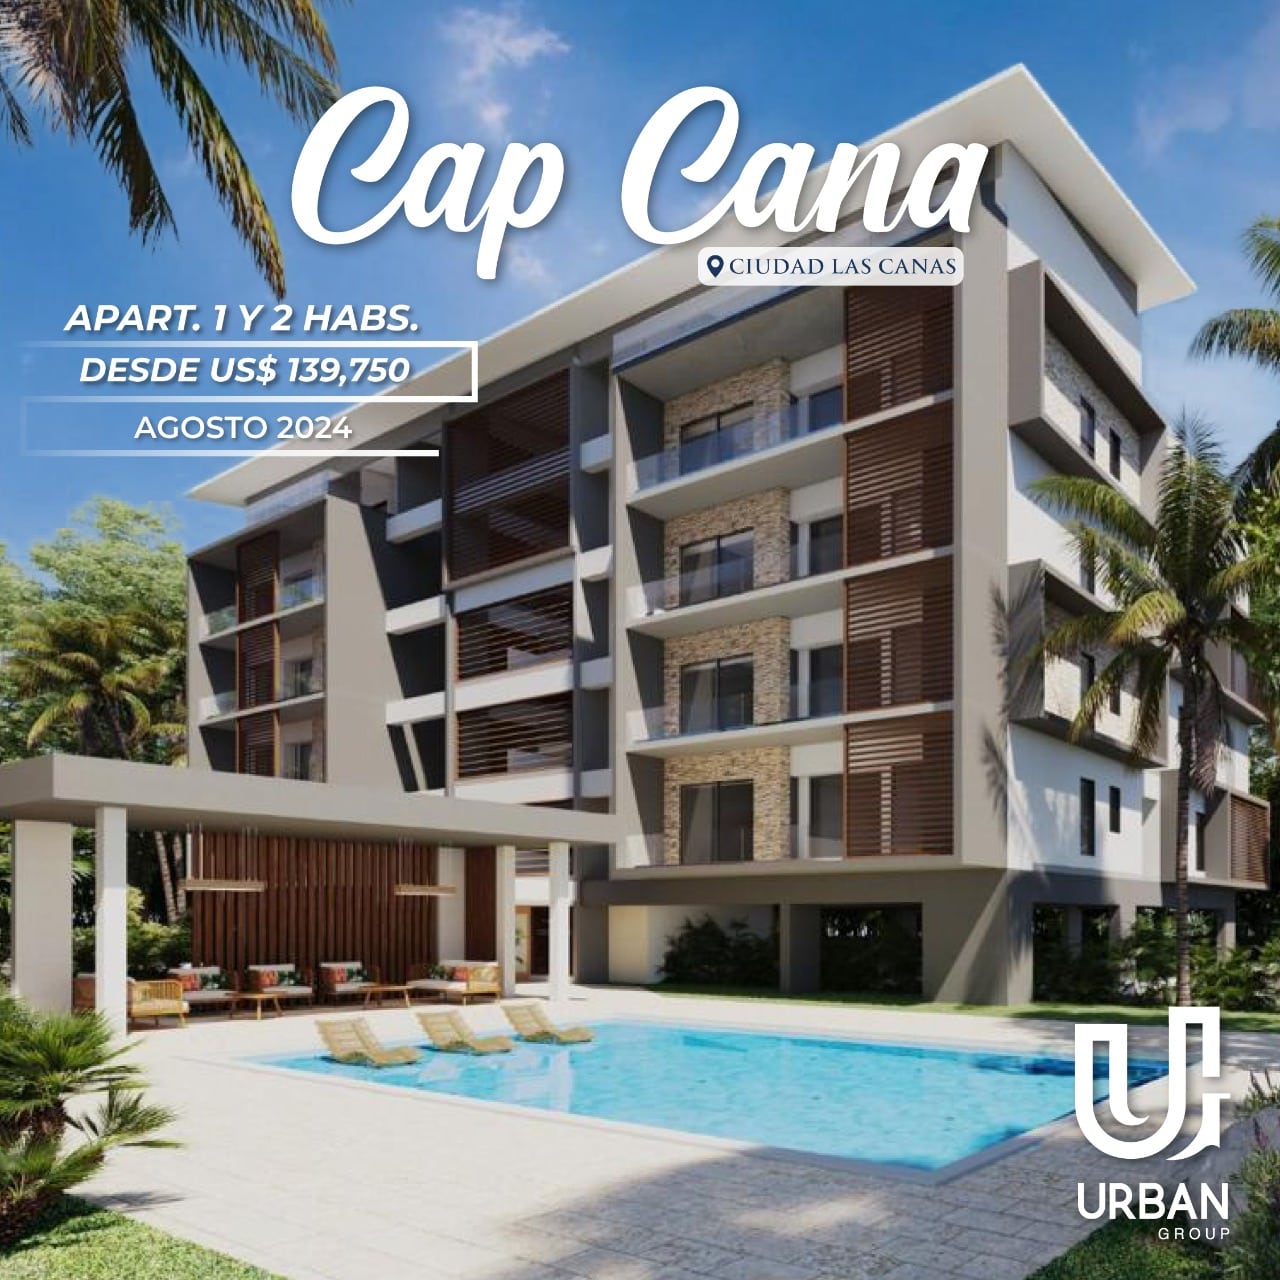 Apartamentos de 1 & 2 Habitaciones Desde US$ 139,750 en Cap Cana